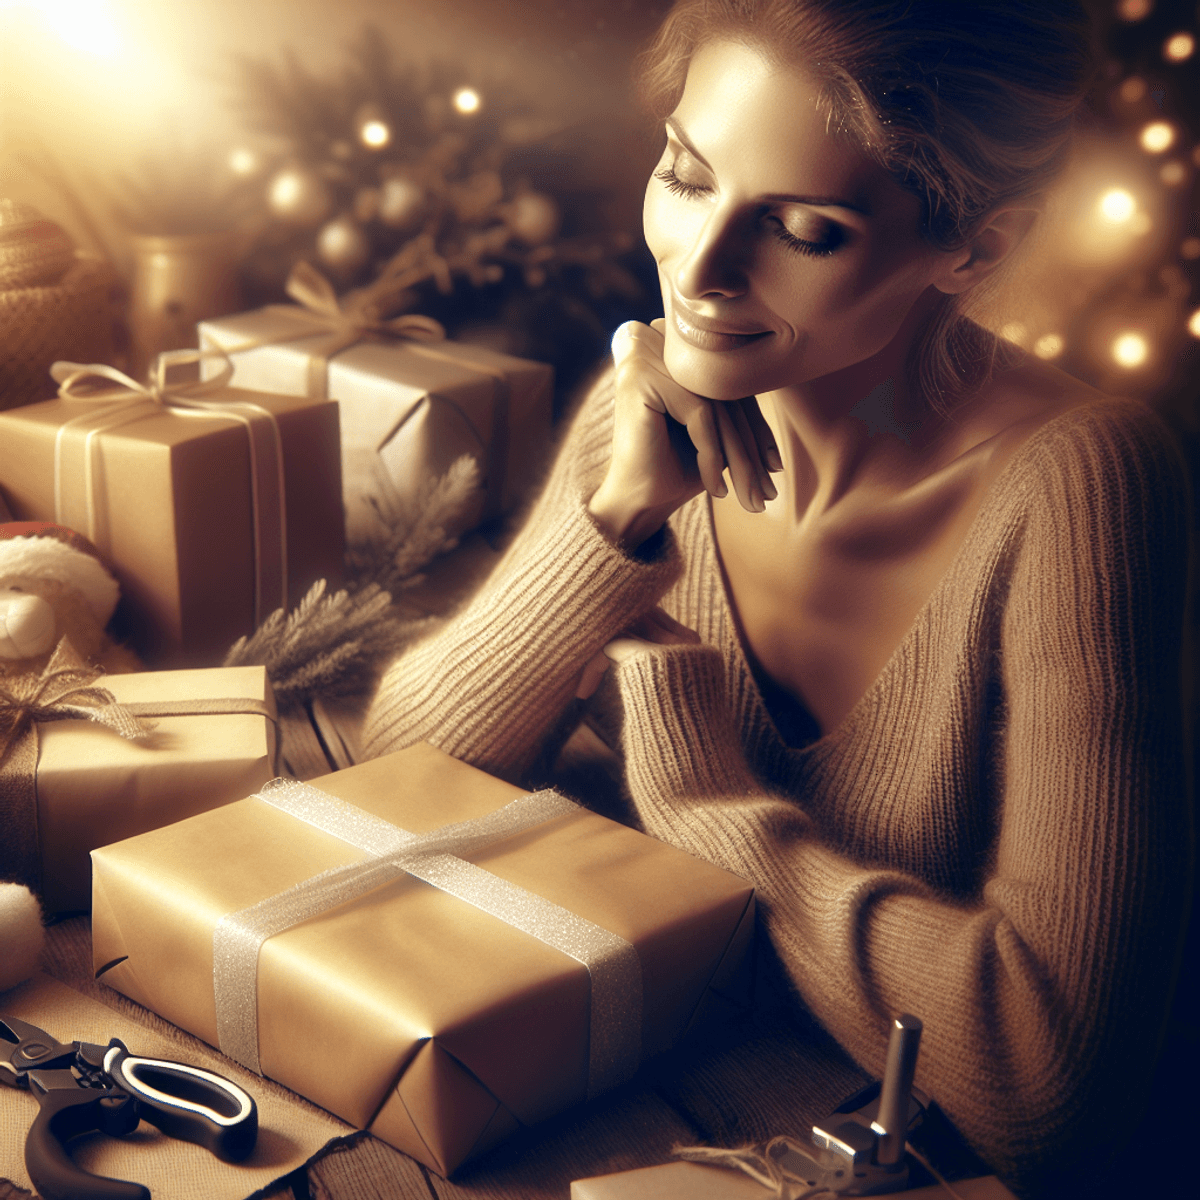 Una mujer caucásica reflexiva sonríe suavemente mientras envuelve cuidadosamente un regalo, rodeada de un ambiente cálido y acogedor lleno de sutiles